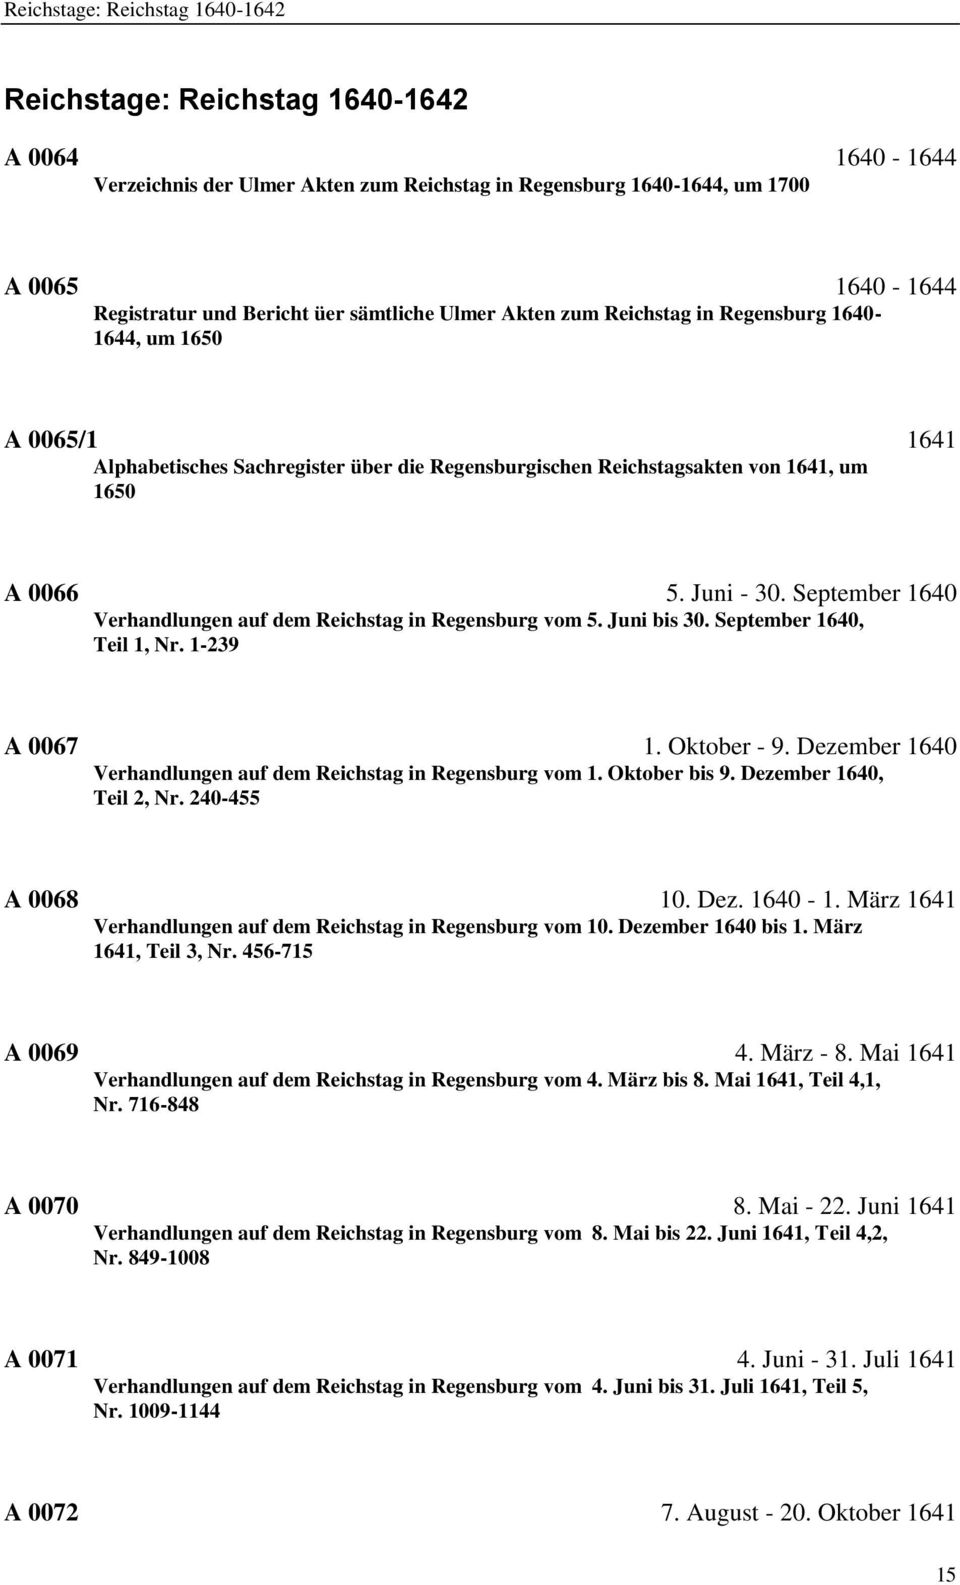 September 1640 Verhandlungen auf dem Reichstag in Regensburg vom 5. Juni bis 30. September 1640, Teil 1, Nr. 1-239 A 0067 1. Oktober - 9.